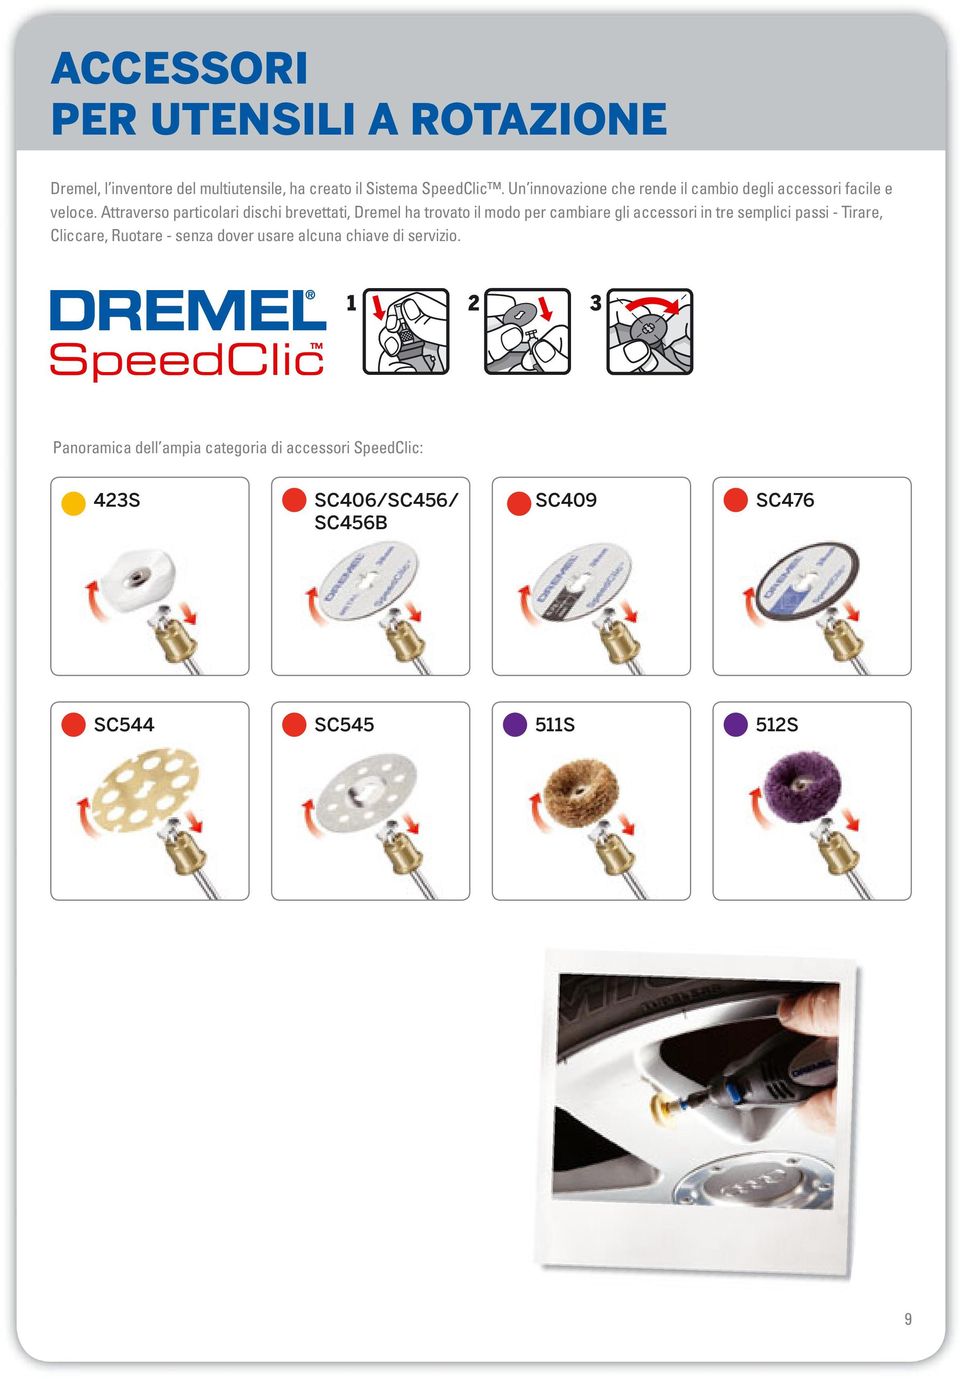 Attraverso particolari dischi brevettati, Dremel ha trovato il modo per cambiare gli accessori in tre semplici passi -